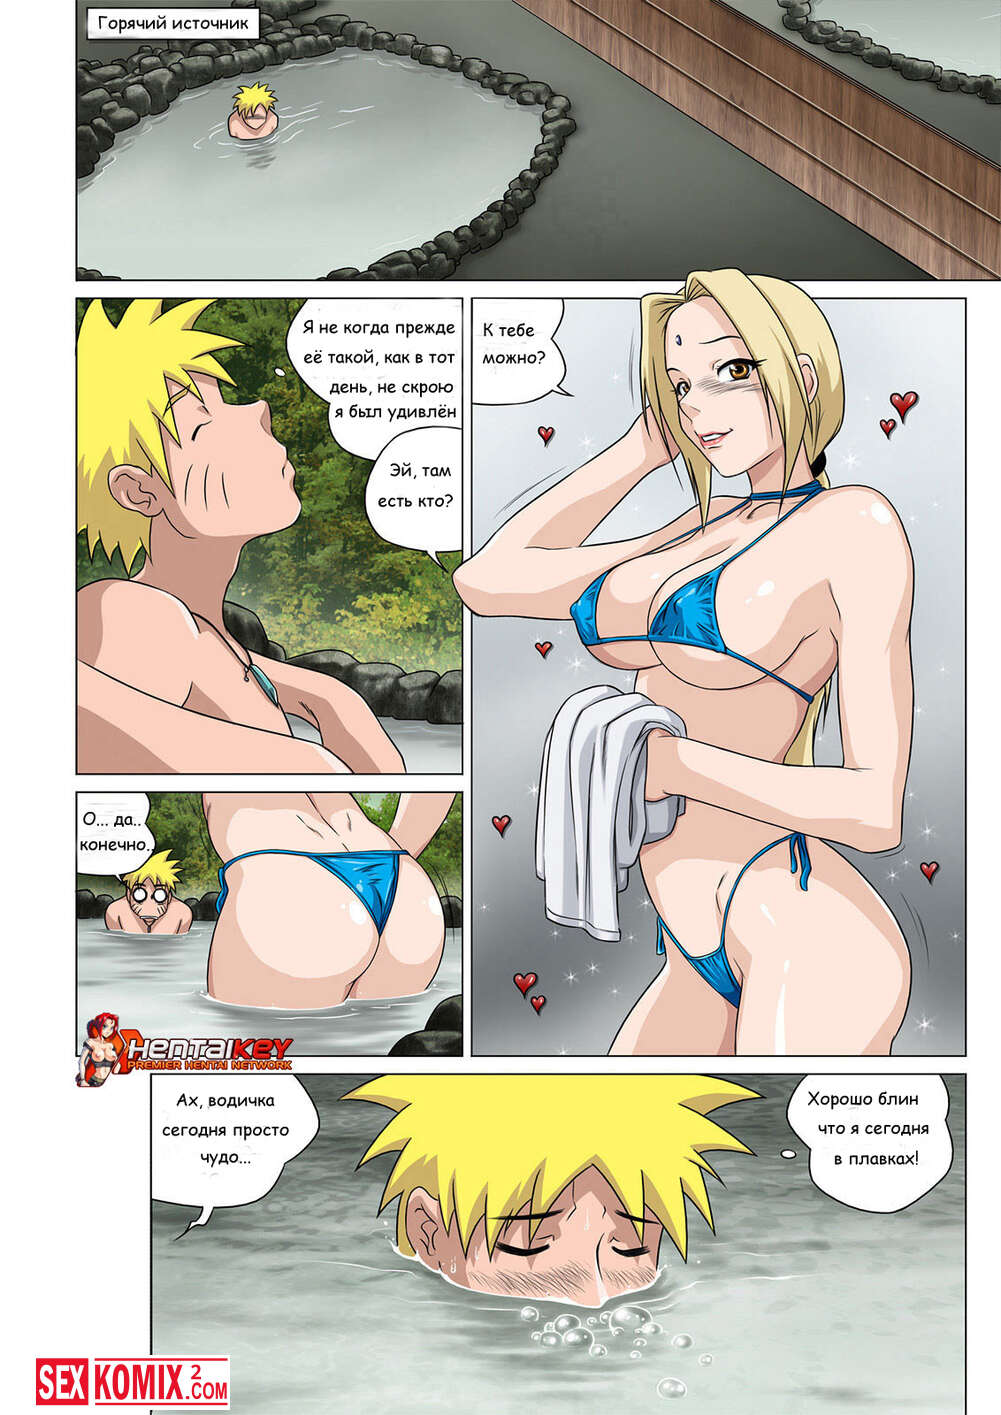 секс аниме на горячих источниках фото 43